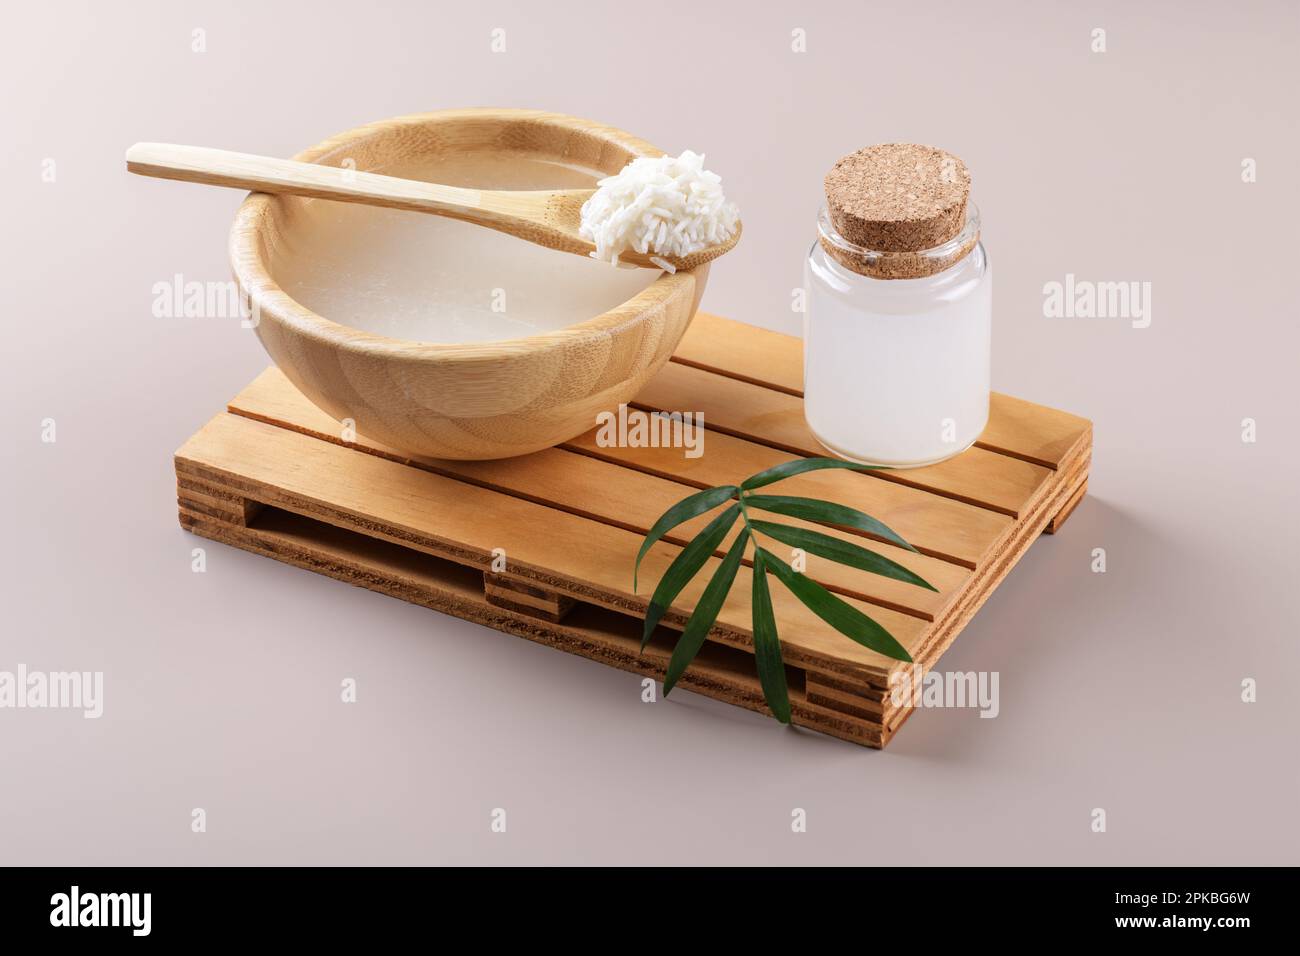 Eau de riz cosmétique maison avec ingrédients et kit de beauté sur fond beige, ingrédients de soins de beauté sains pour comsétiques maison, beauté Banque D'Images